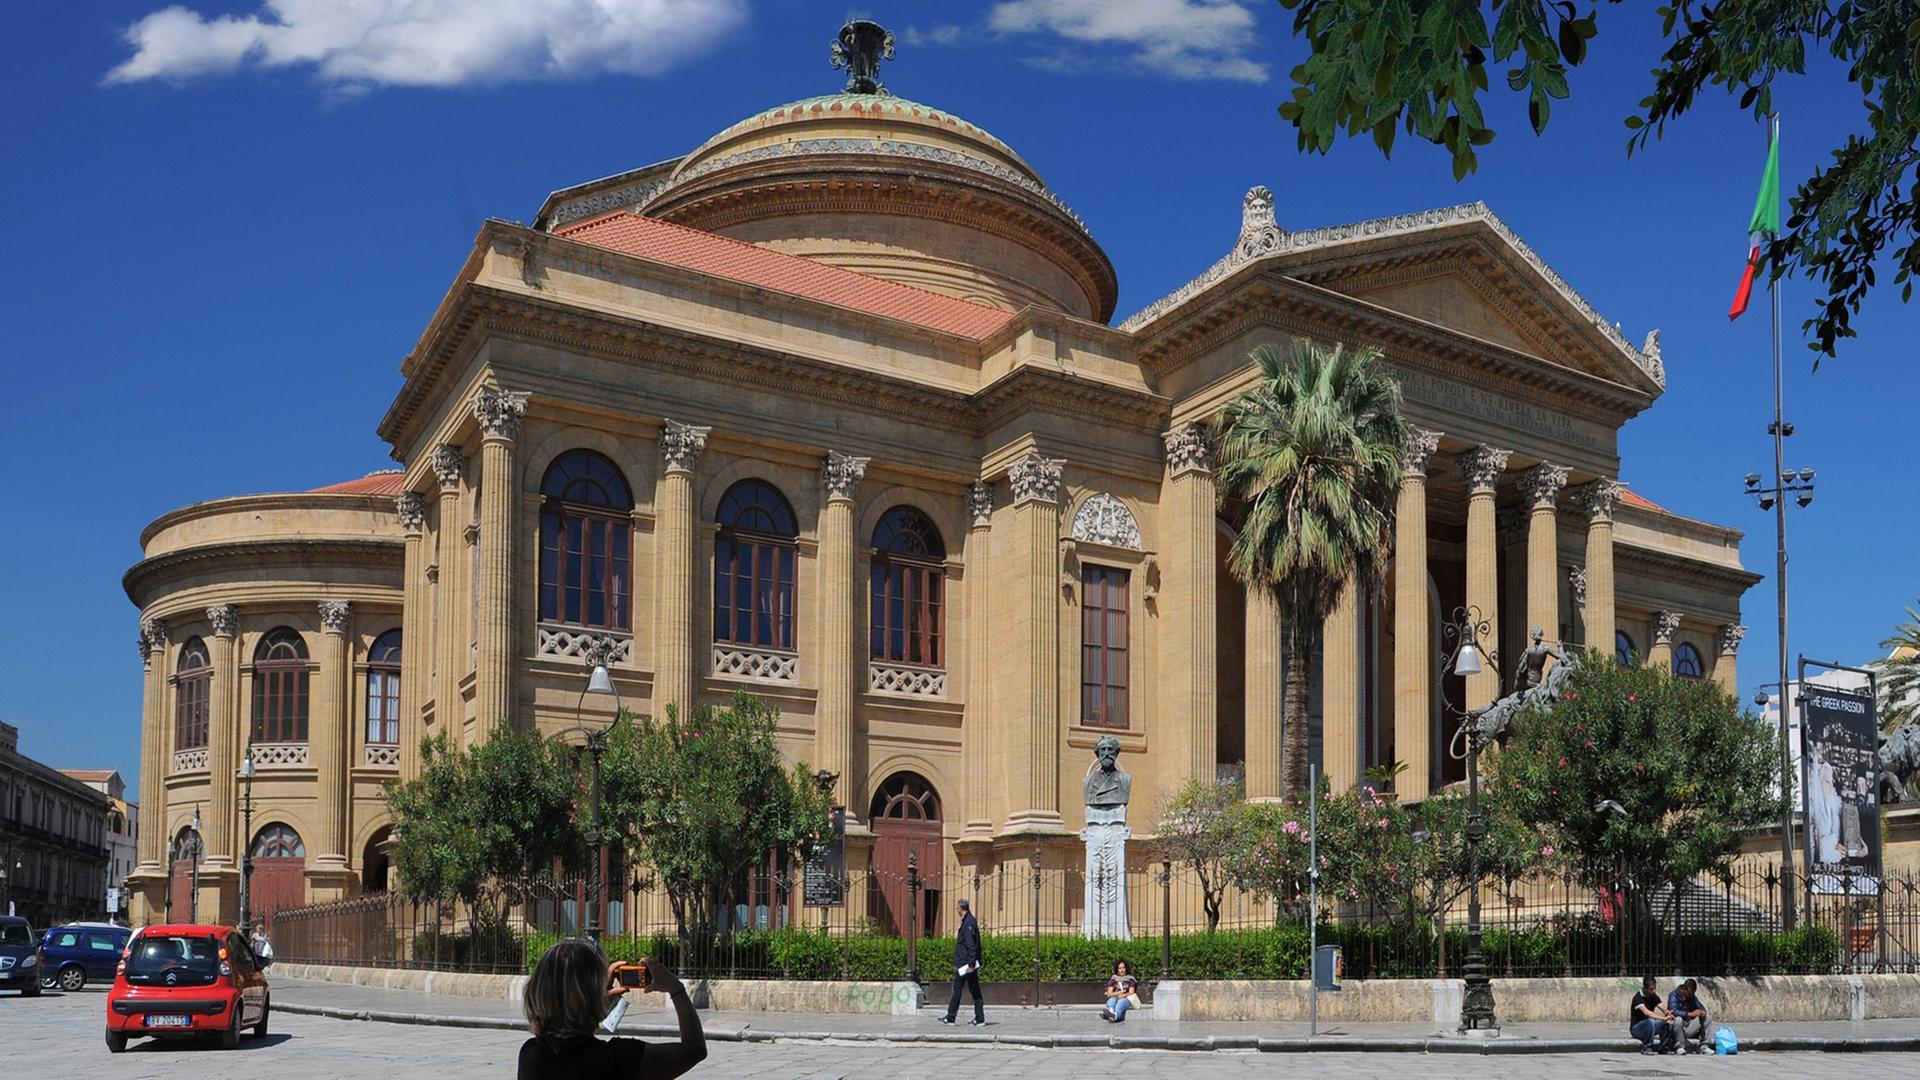 Blick auf die Säulenfront und Kuppel des Teatro Massimo in Palermo